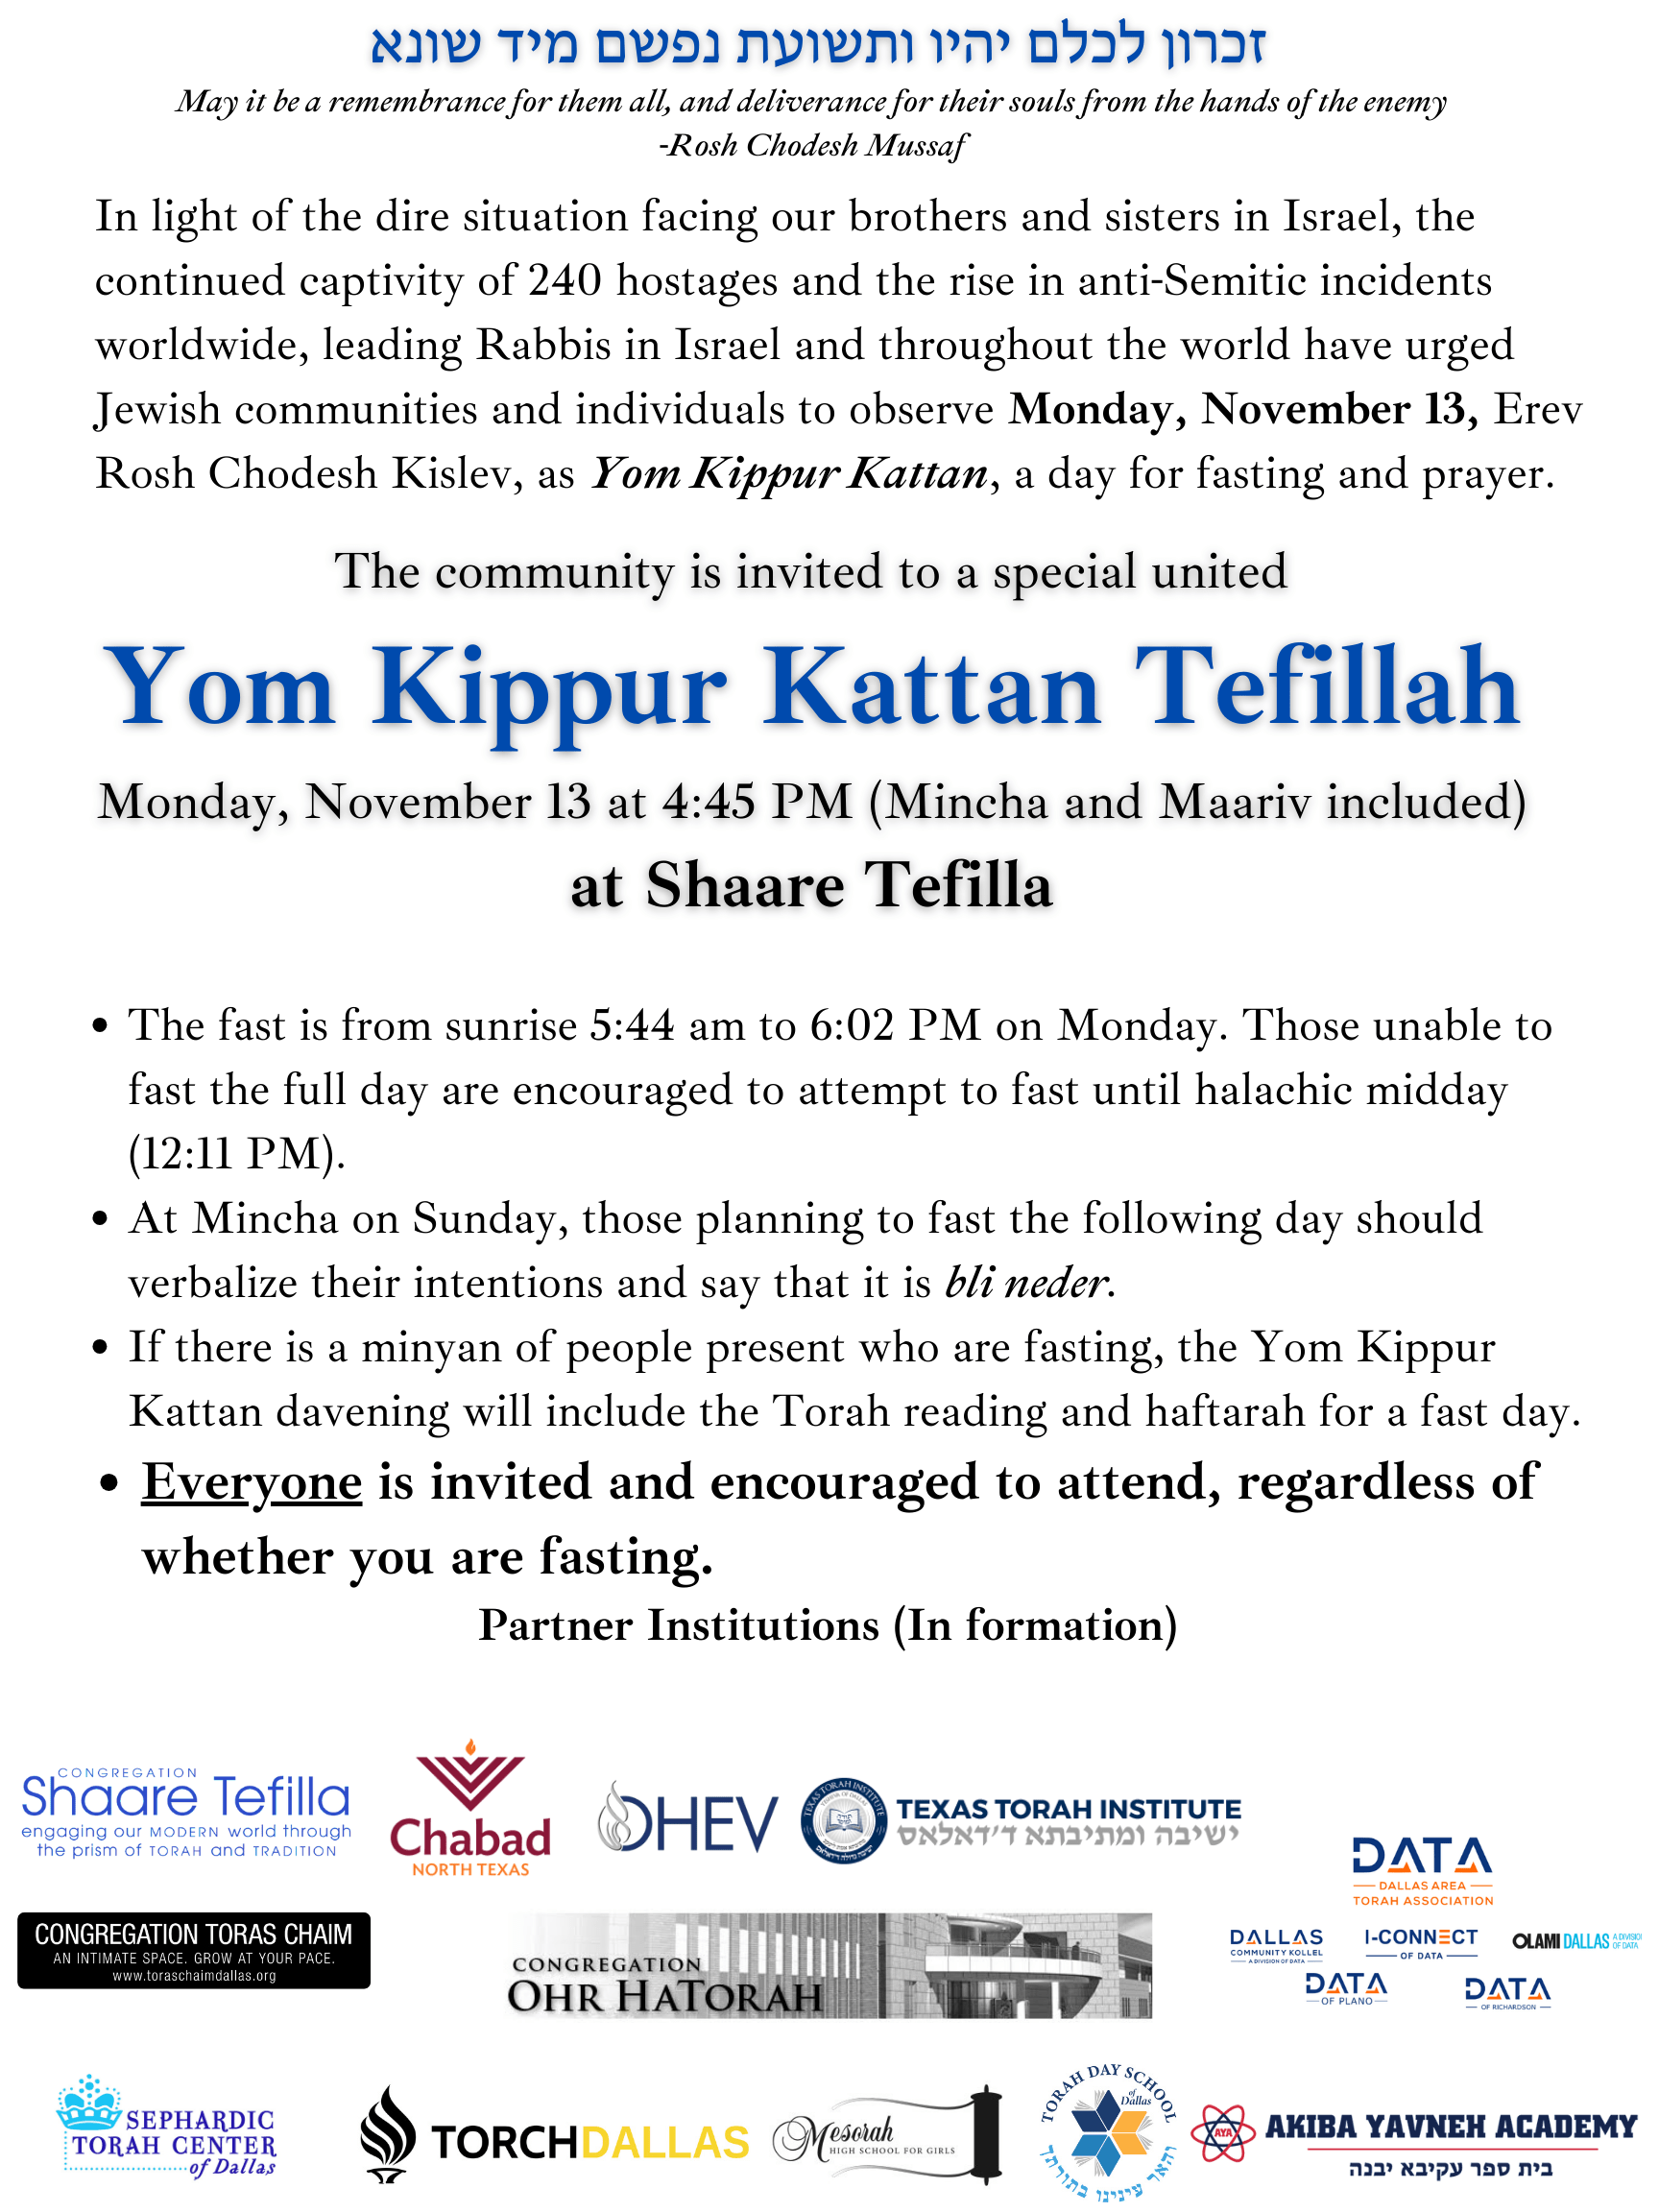 Community Yom Kippur Kattan Tefillah 1